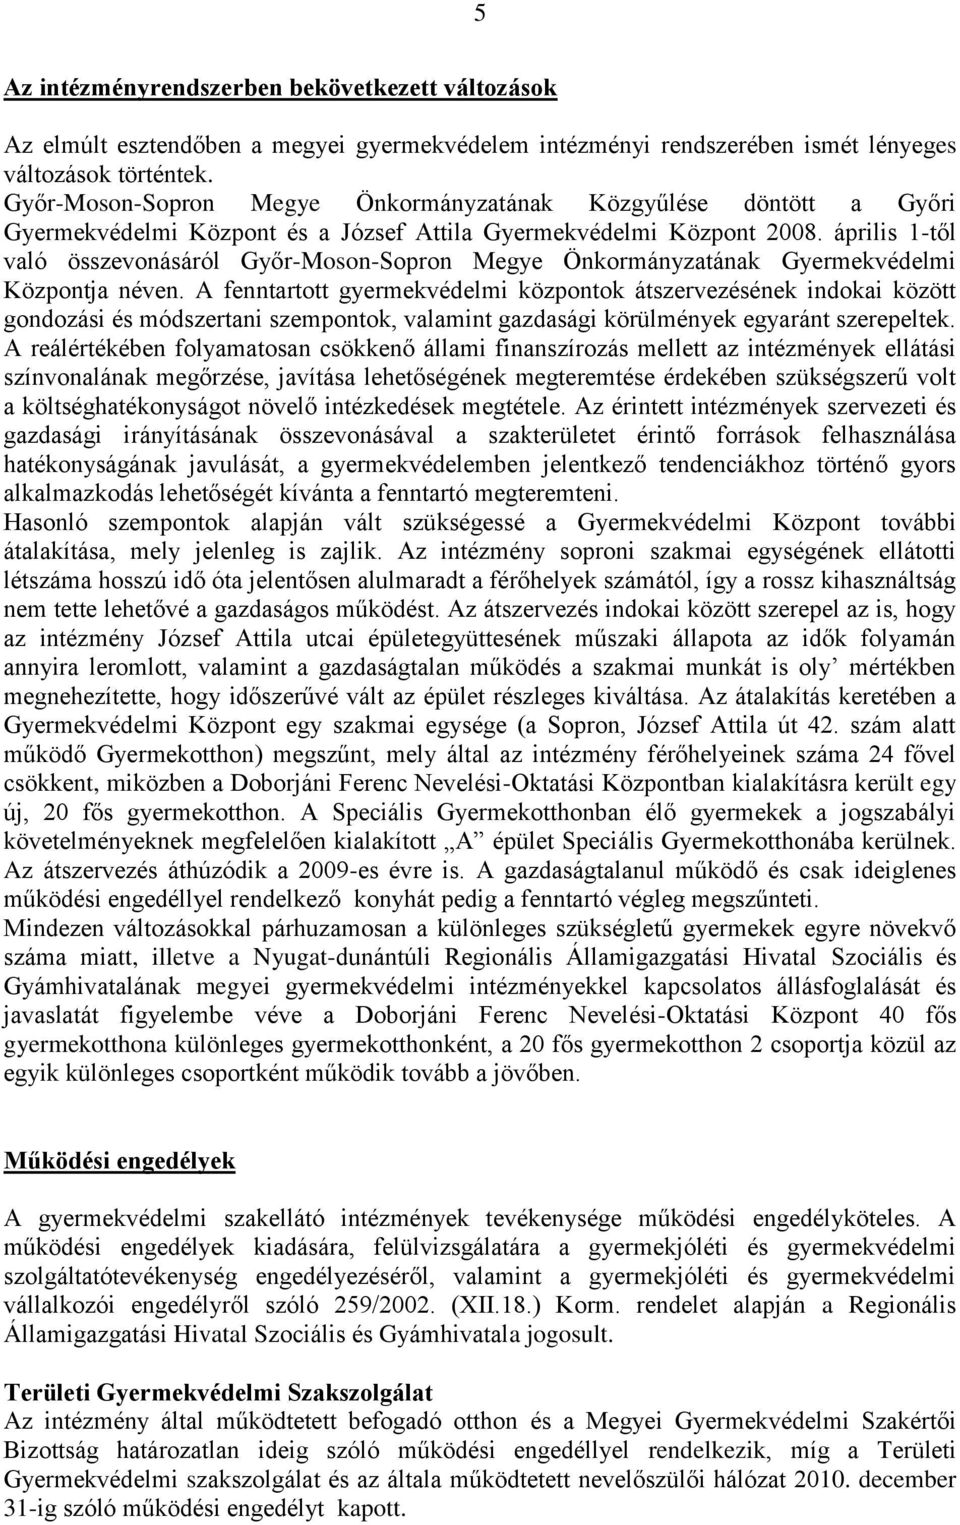 április 1-től való összevonásáról Győr-Moson-Sopron Megye Önkormányzatának Gyermekvédelmi Központja néven.